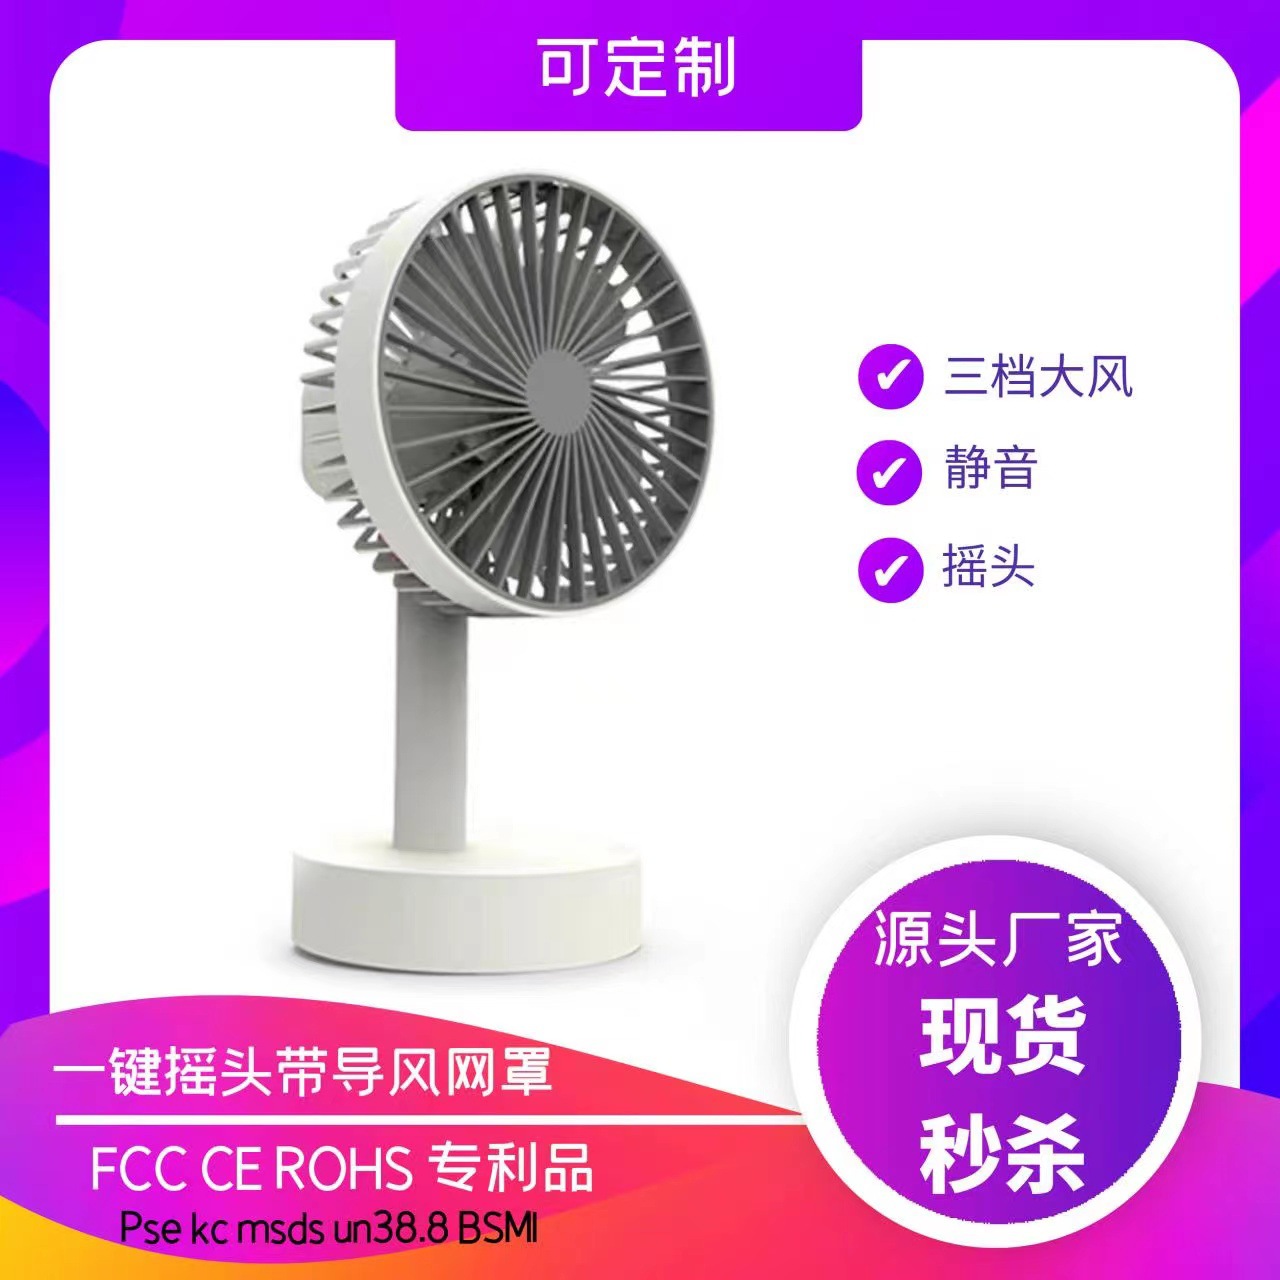 Factory customized small fan desktop cha...